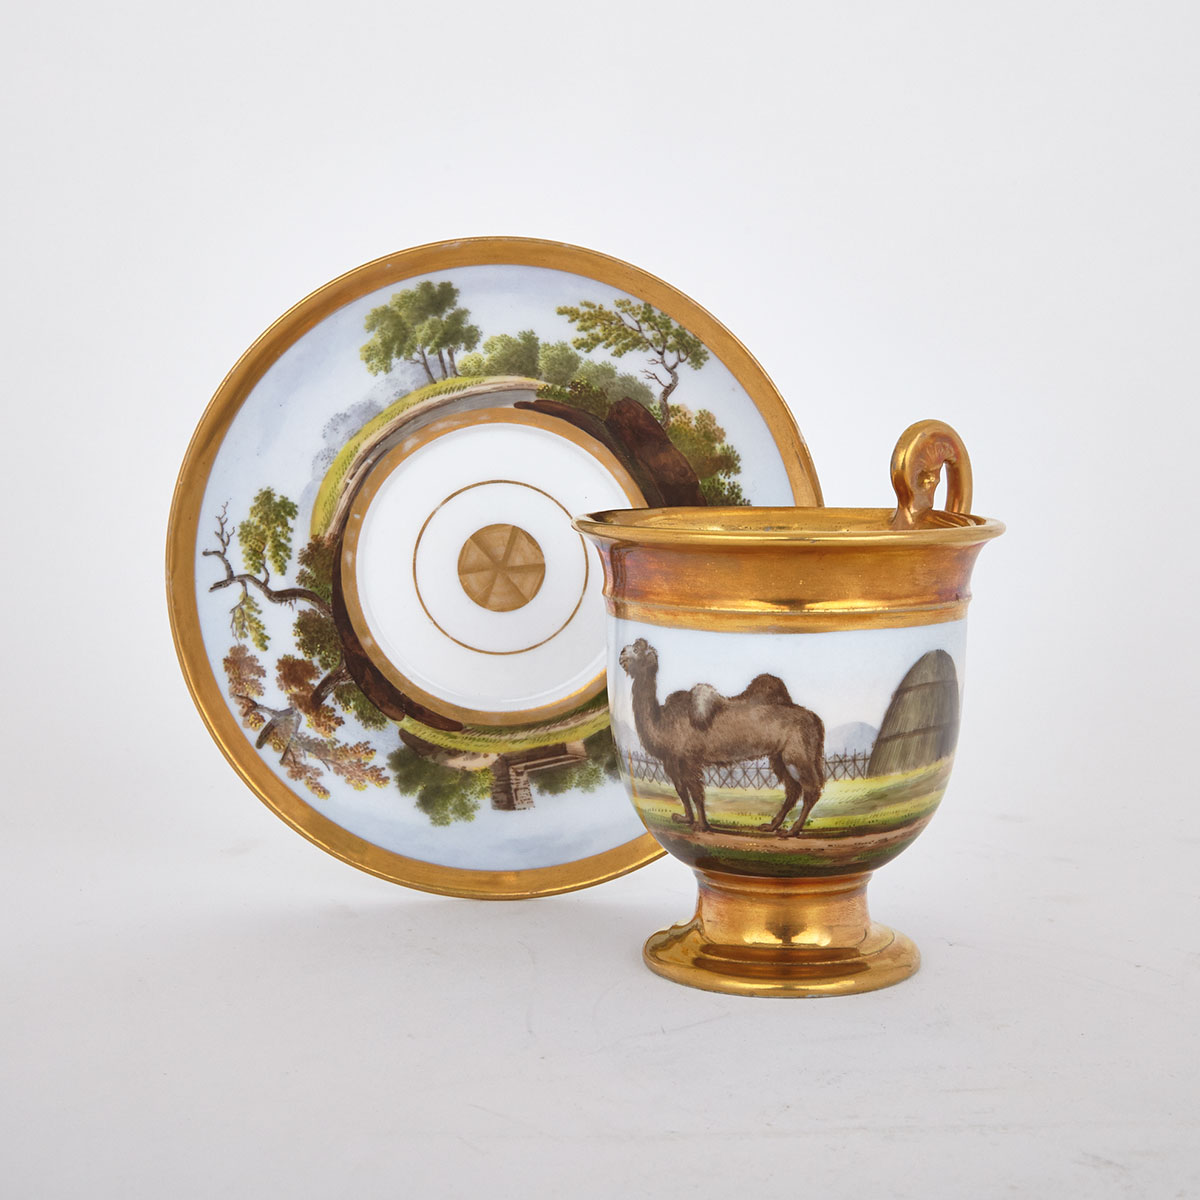 Schoelcher, Paris Porcelain Zoological Cup and Saucer, c.1840